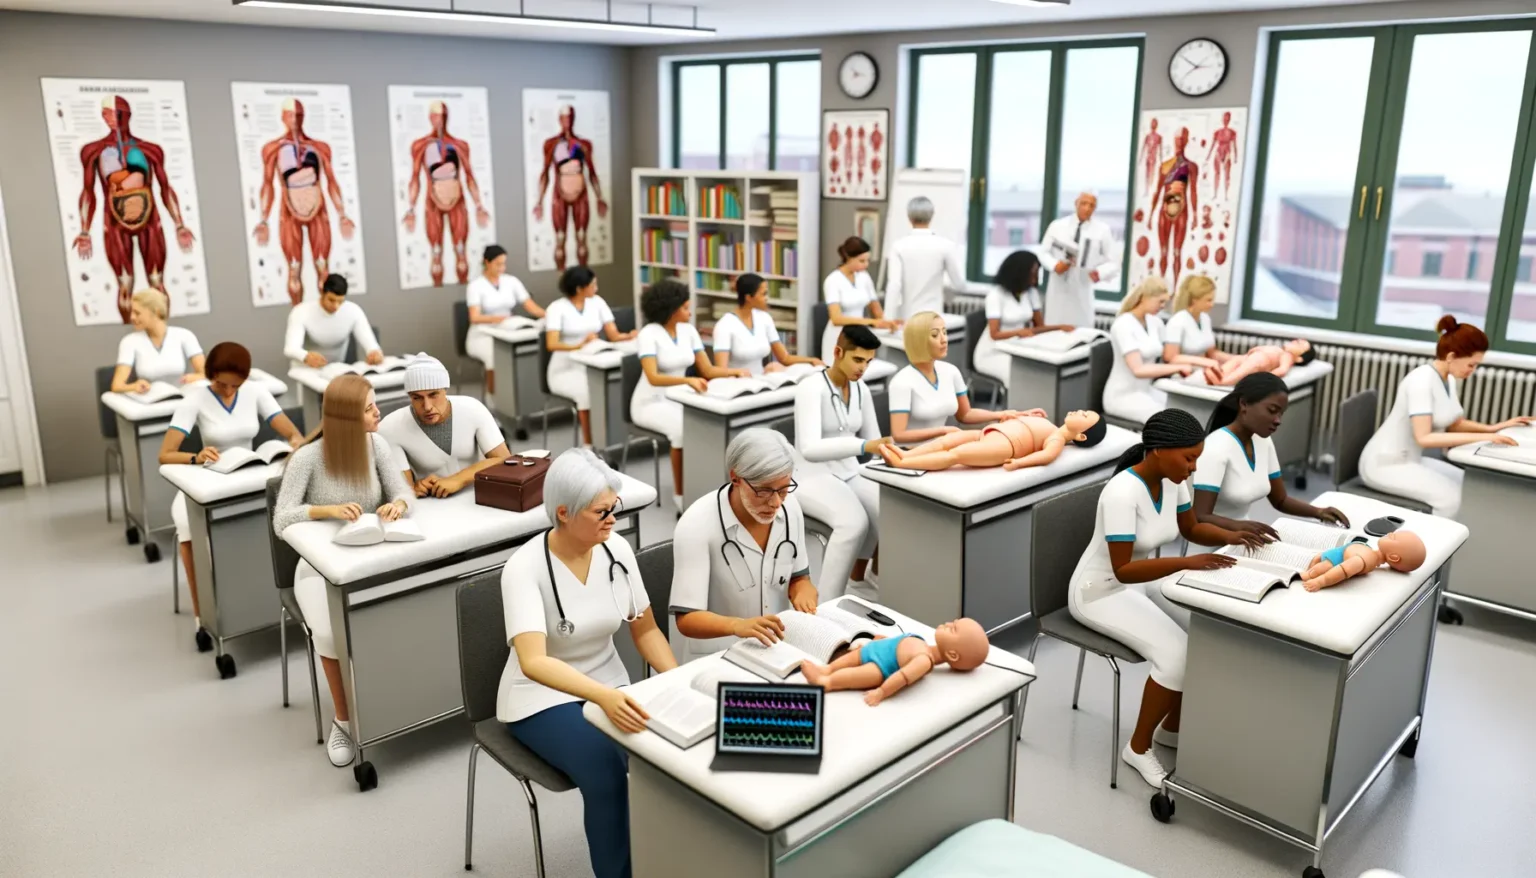 Ein Klassenzimmer voller Medizinstudierender in weißen Kitteln, die an Tischen sitzen und an Puppen üben oder in Lehrbüchern lesen. An den Wänden hängen anatomische Plakate des menschlichen Körpers. Ein Dozent steht im Hintergrund und schaut in die Klasse.